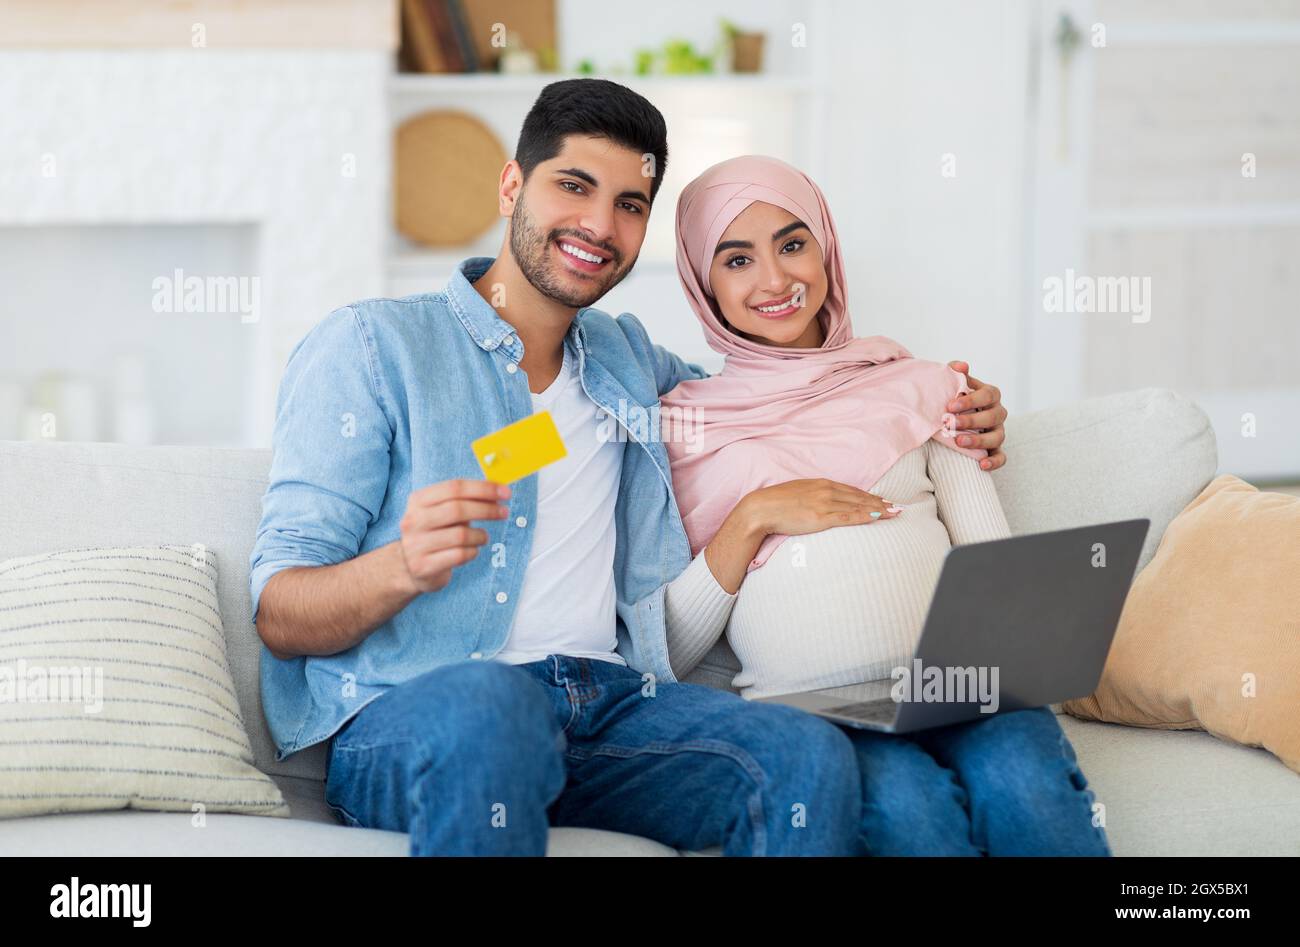 Felices cónyuges islámicos embarazadas disfrutando de hacer pagos en línea con el ordenador portátil y la tarjeta de crédito, descansando en casa Foto de stock